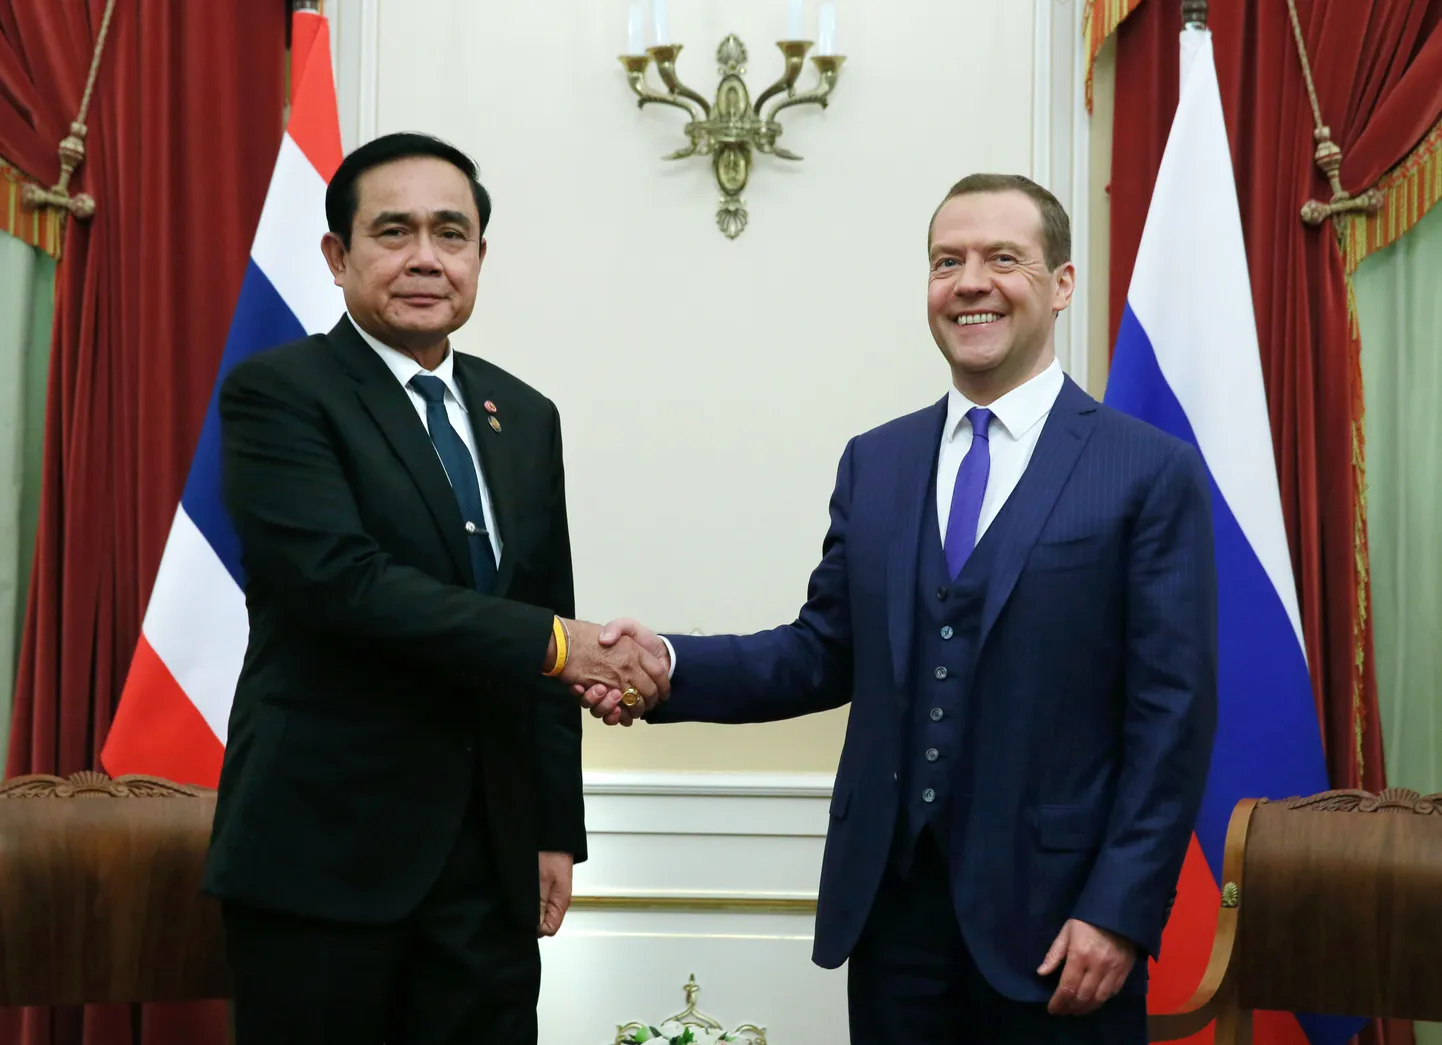 Venemaa peaminister Dmitri Medvedev ja Tai peaminister Prayuth Chan-ocha täna kohtumisel Sankt Peterburis.